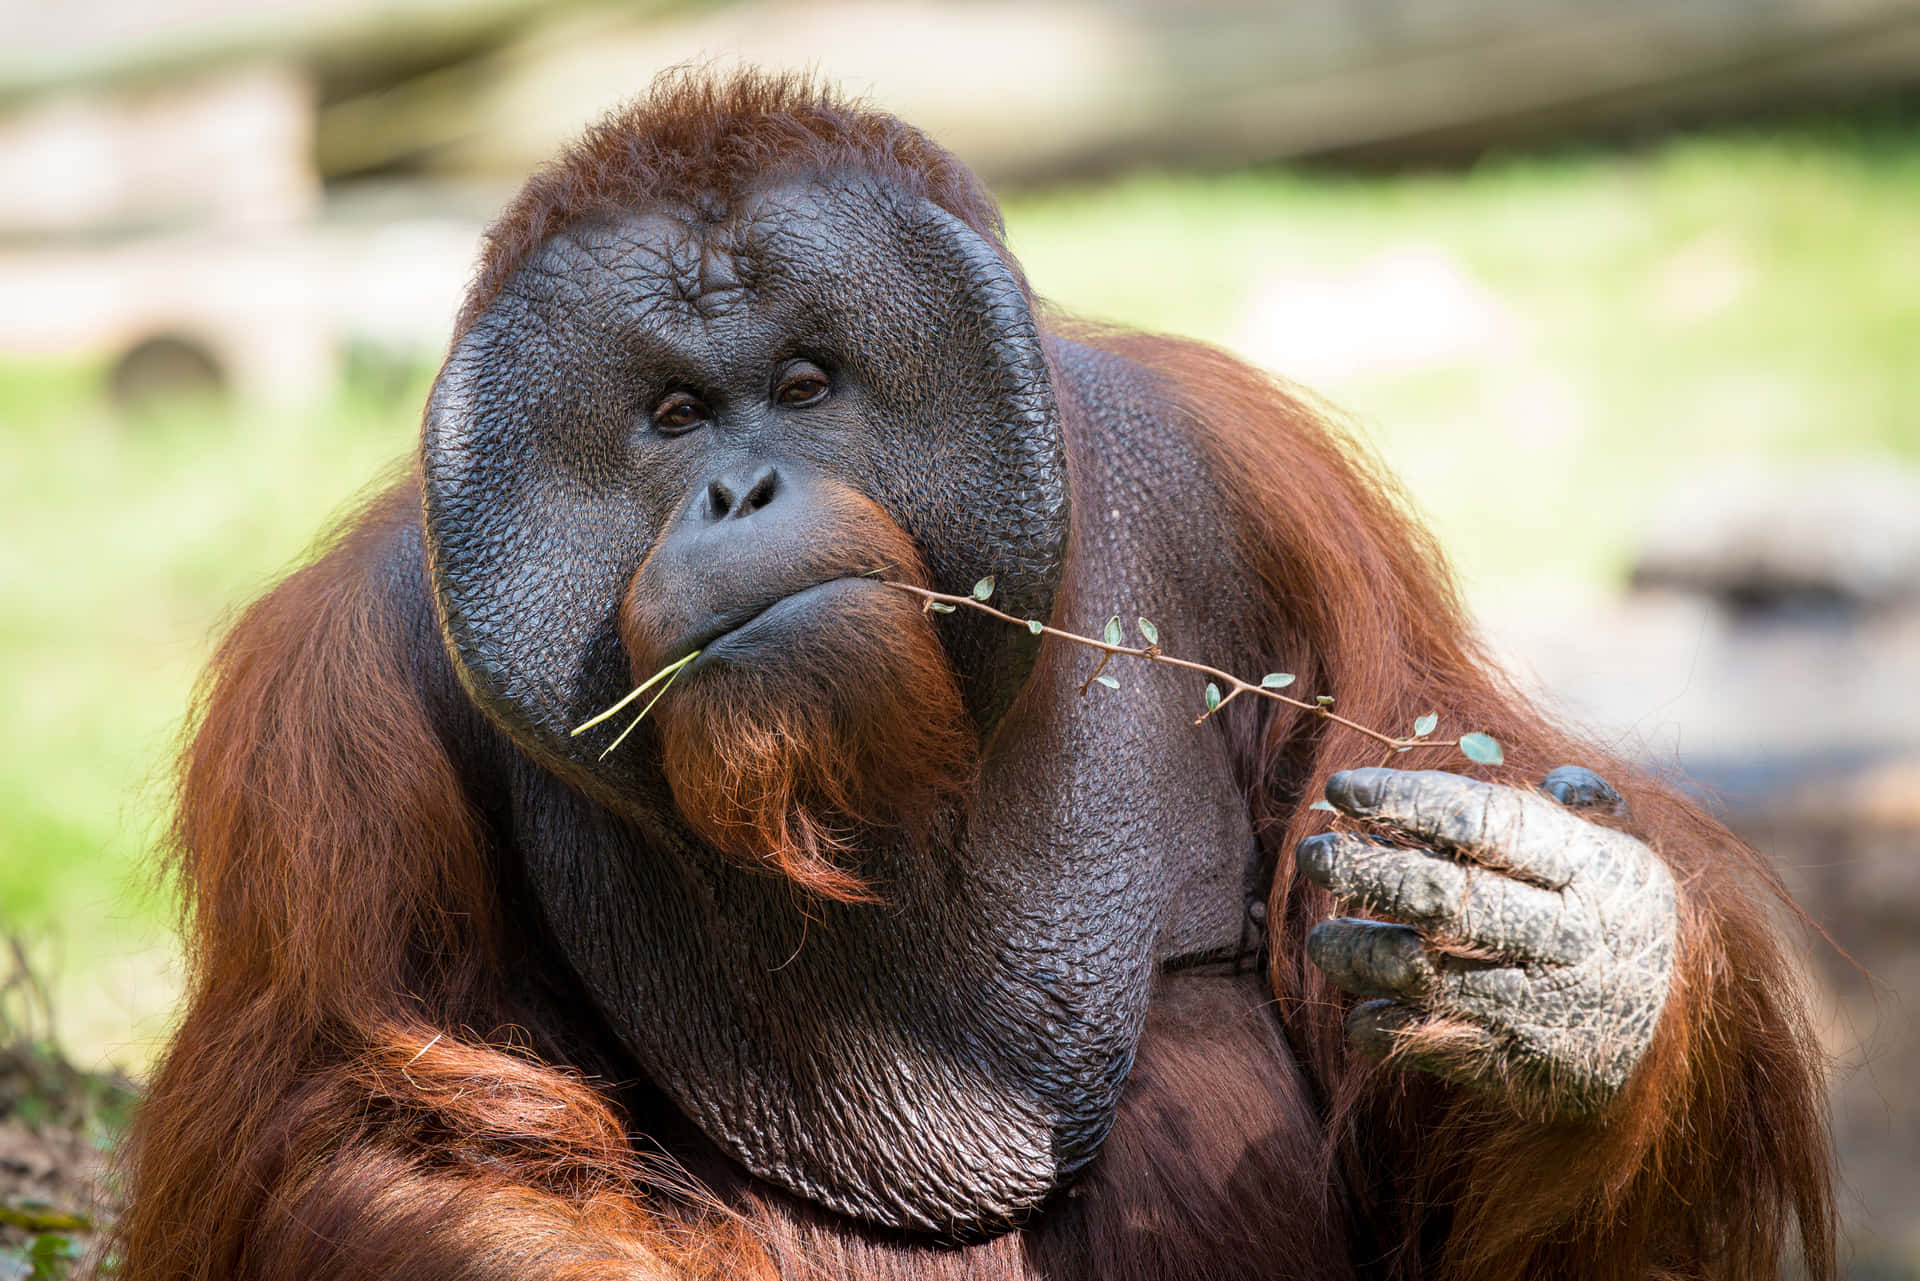 An orangutan enjoying life at the nature reserve.